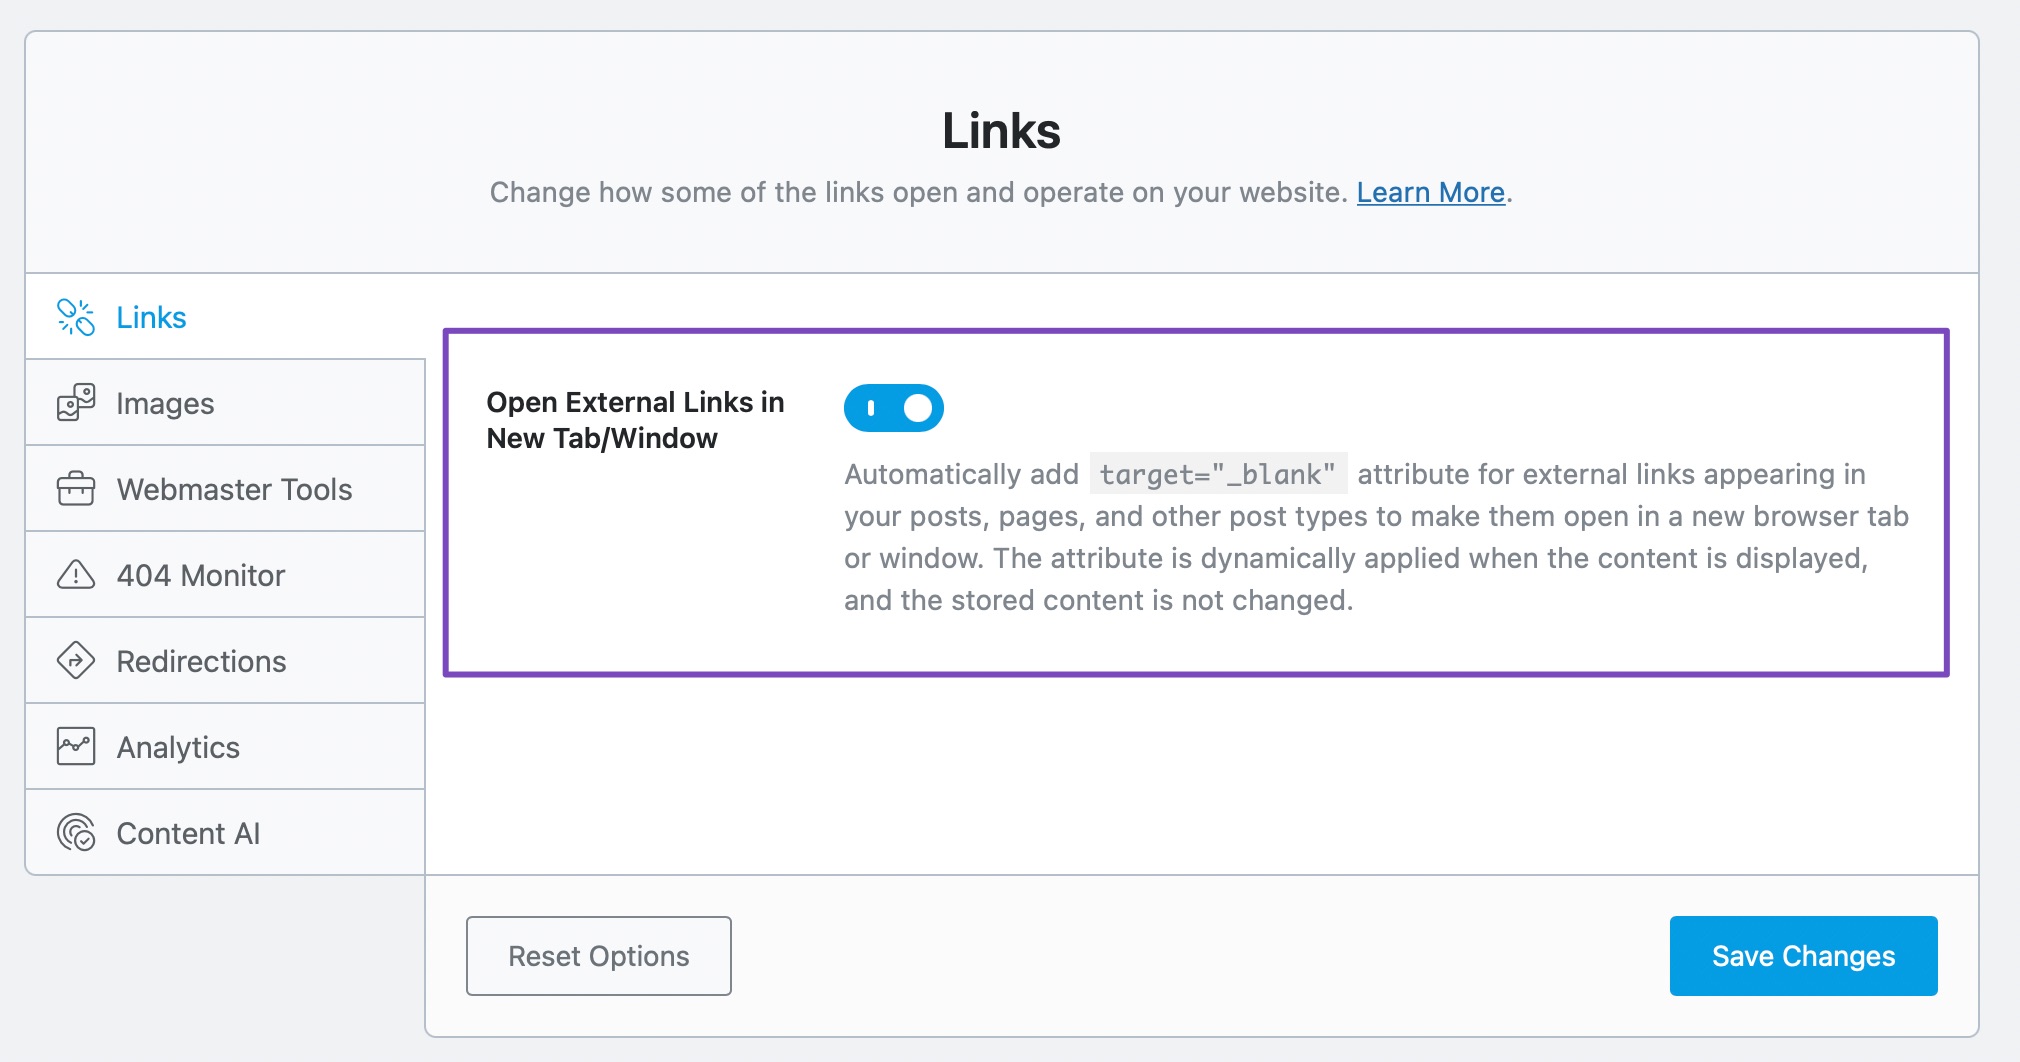 Links Option in Easy Mode